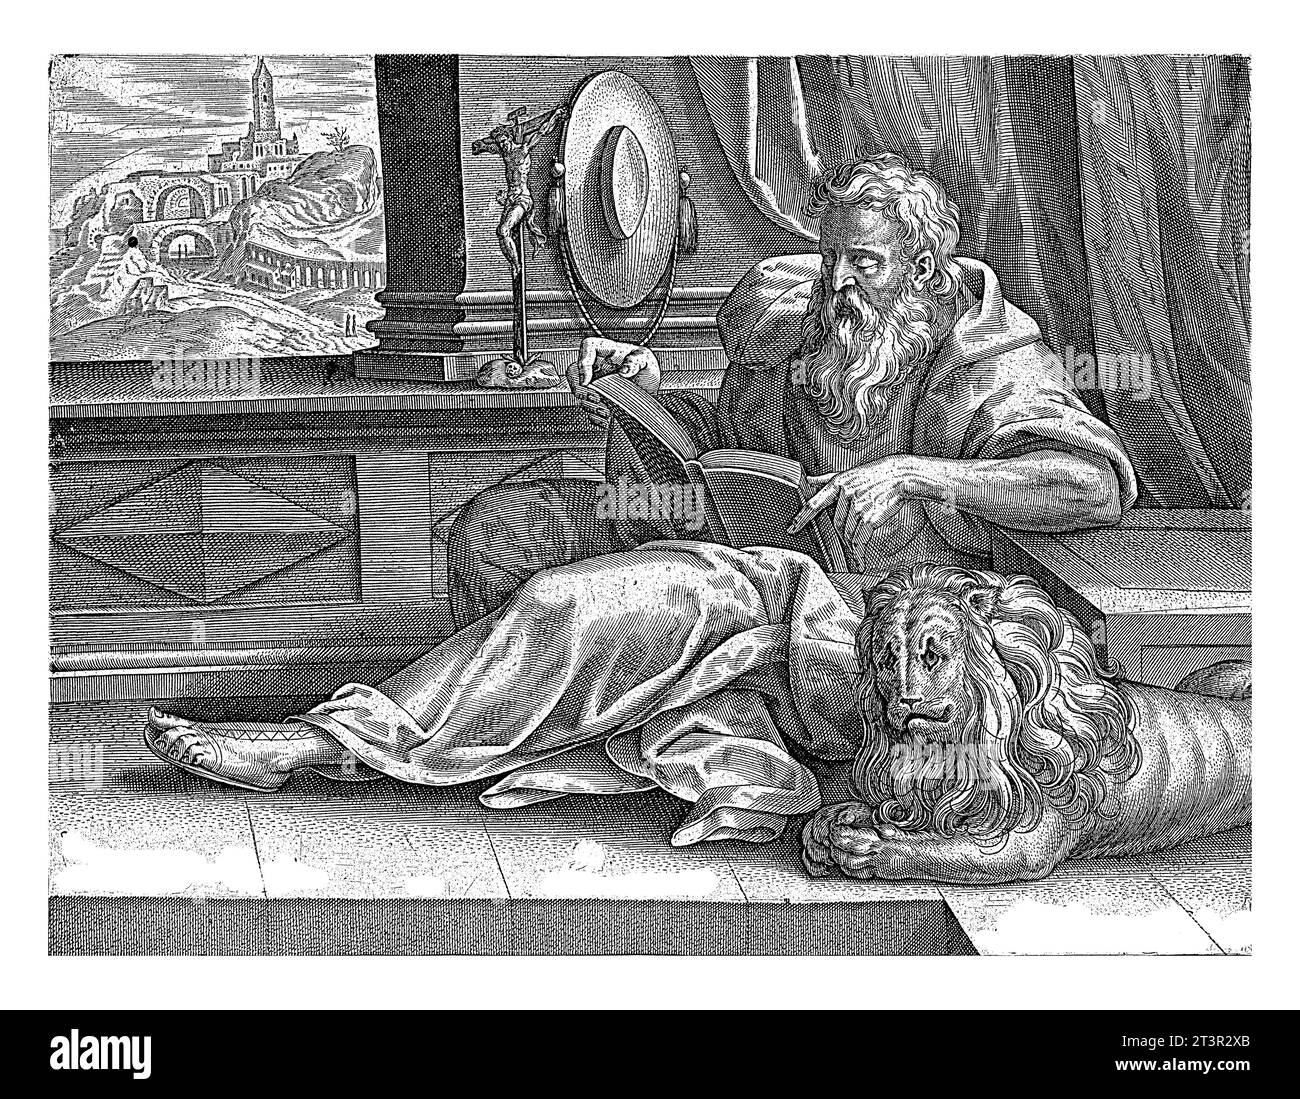 Der Heilige Jerome liest ein Buch. Neben ihm liegt der Löwe. Der Hut seines Kardinals hängt an der Wand, ein Kruzifix steht auf der Fensterbank. Das Fenster überlappt Stockfoto